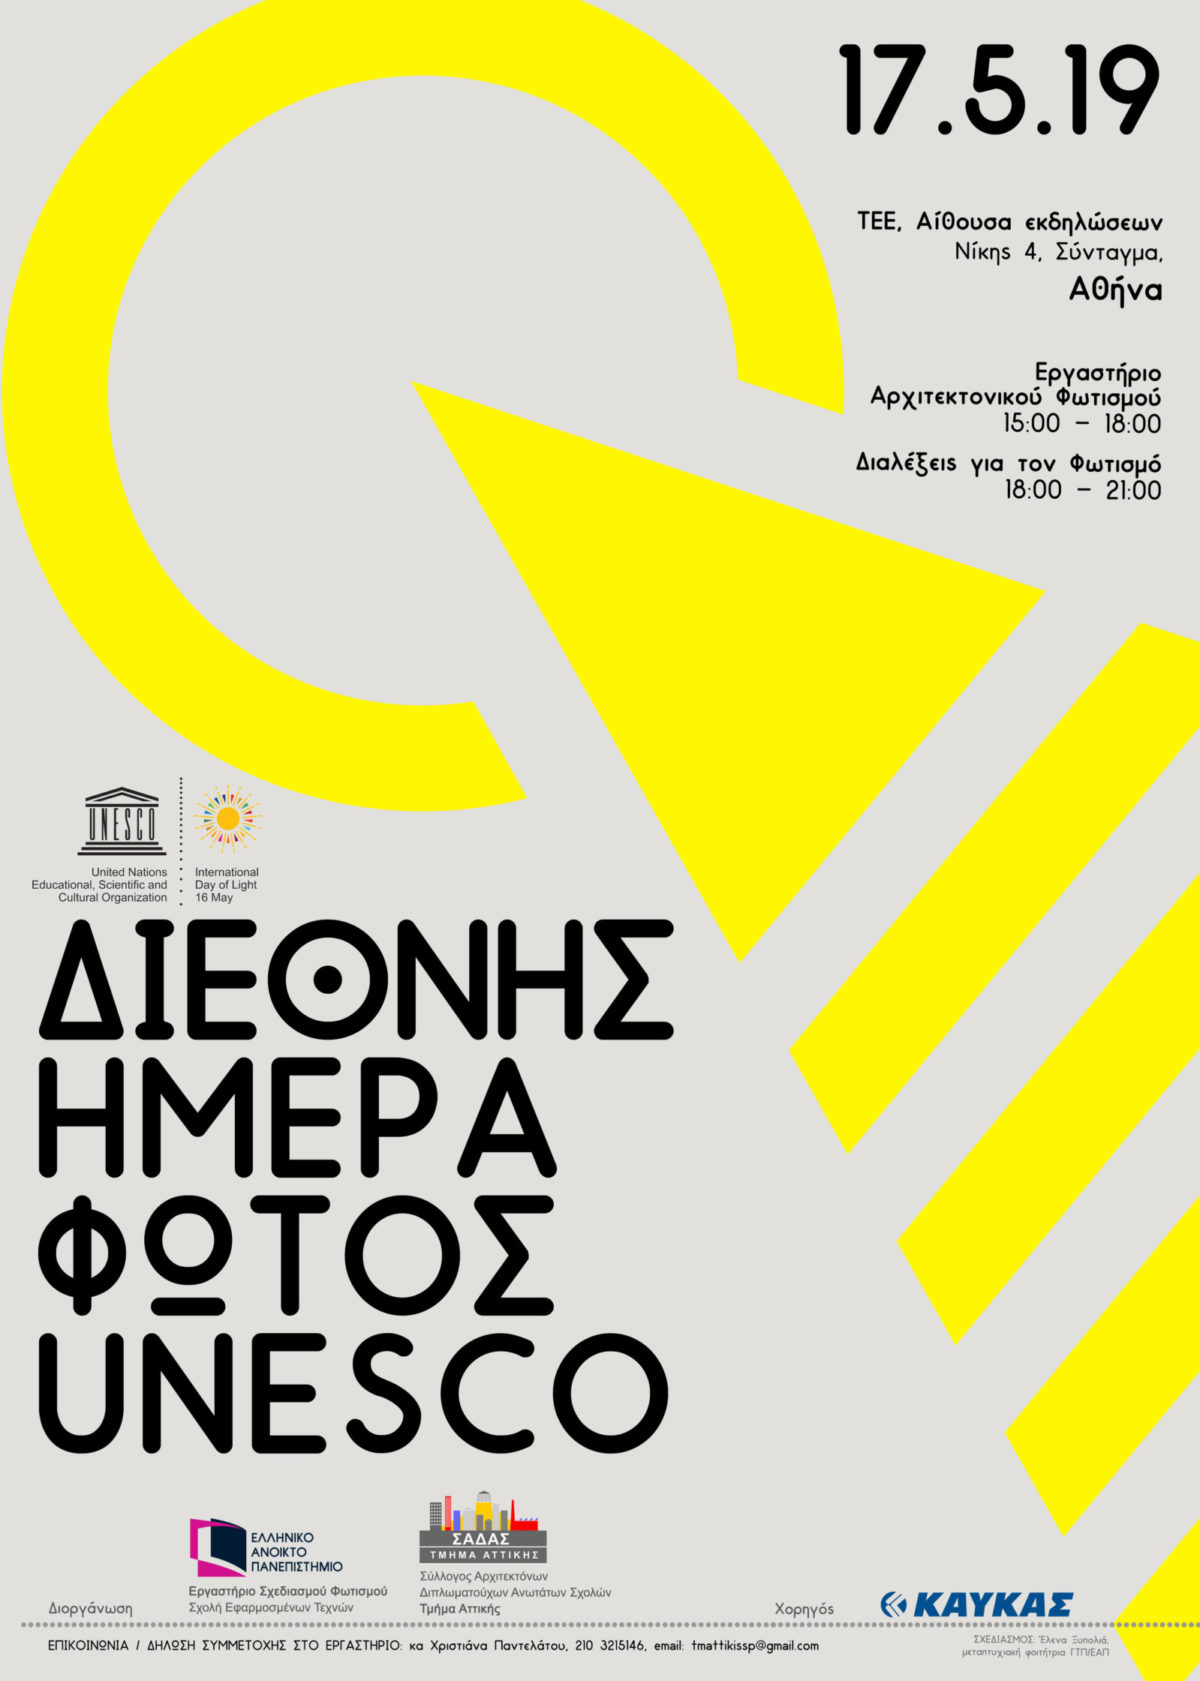 ΣΑΔΑΣ Τμ. Αττικής – Πρόσκληση για Ανοικτή Εκδήλωση ΗΜΕΡΑΣ ΦΩΤΟΣ UNESCO – Διαλέξεις για τον Φωτισμό, Αίθουσα εκδηλώσεων ΤΕΕ, Παρασκευή 17.05.19